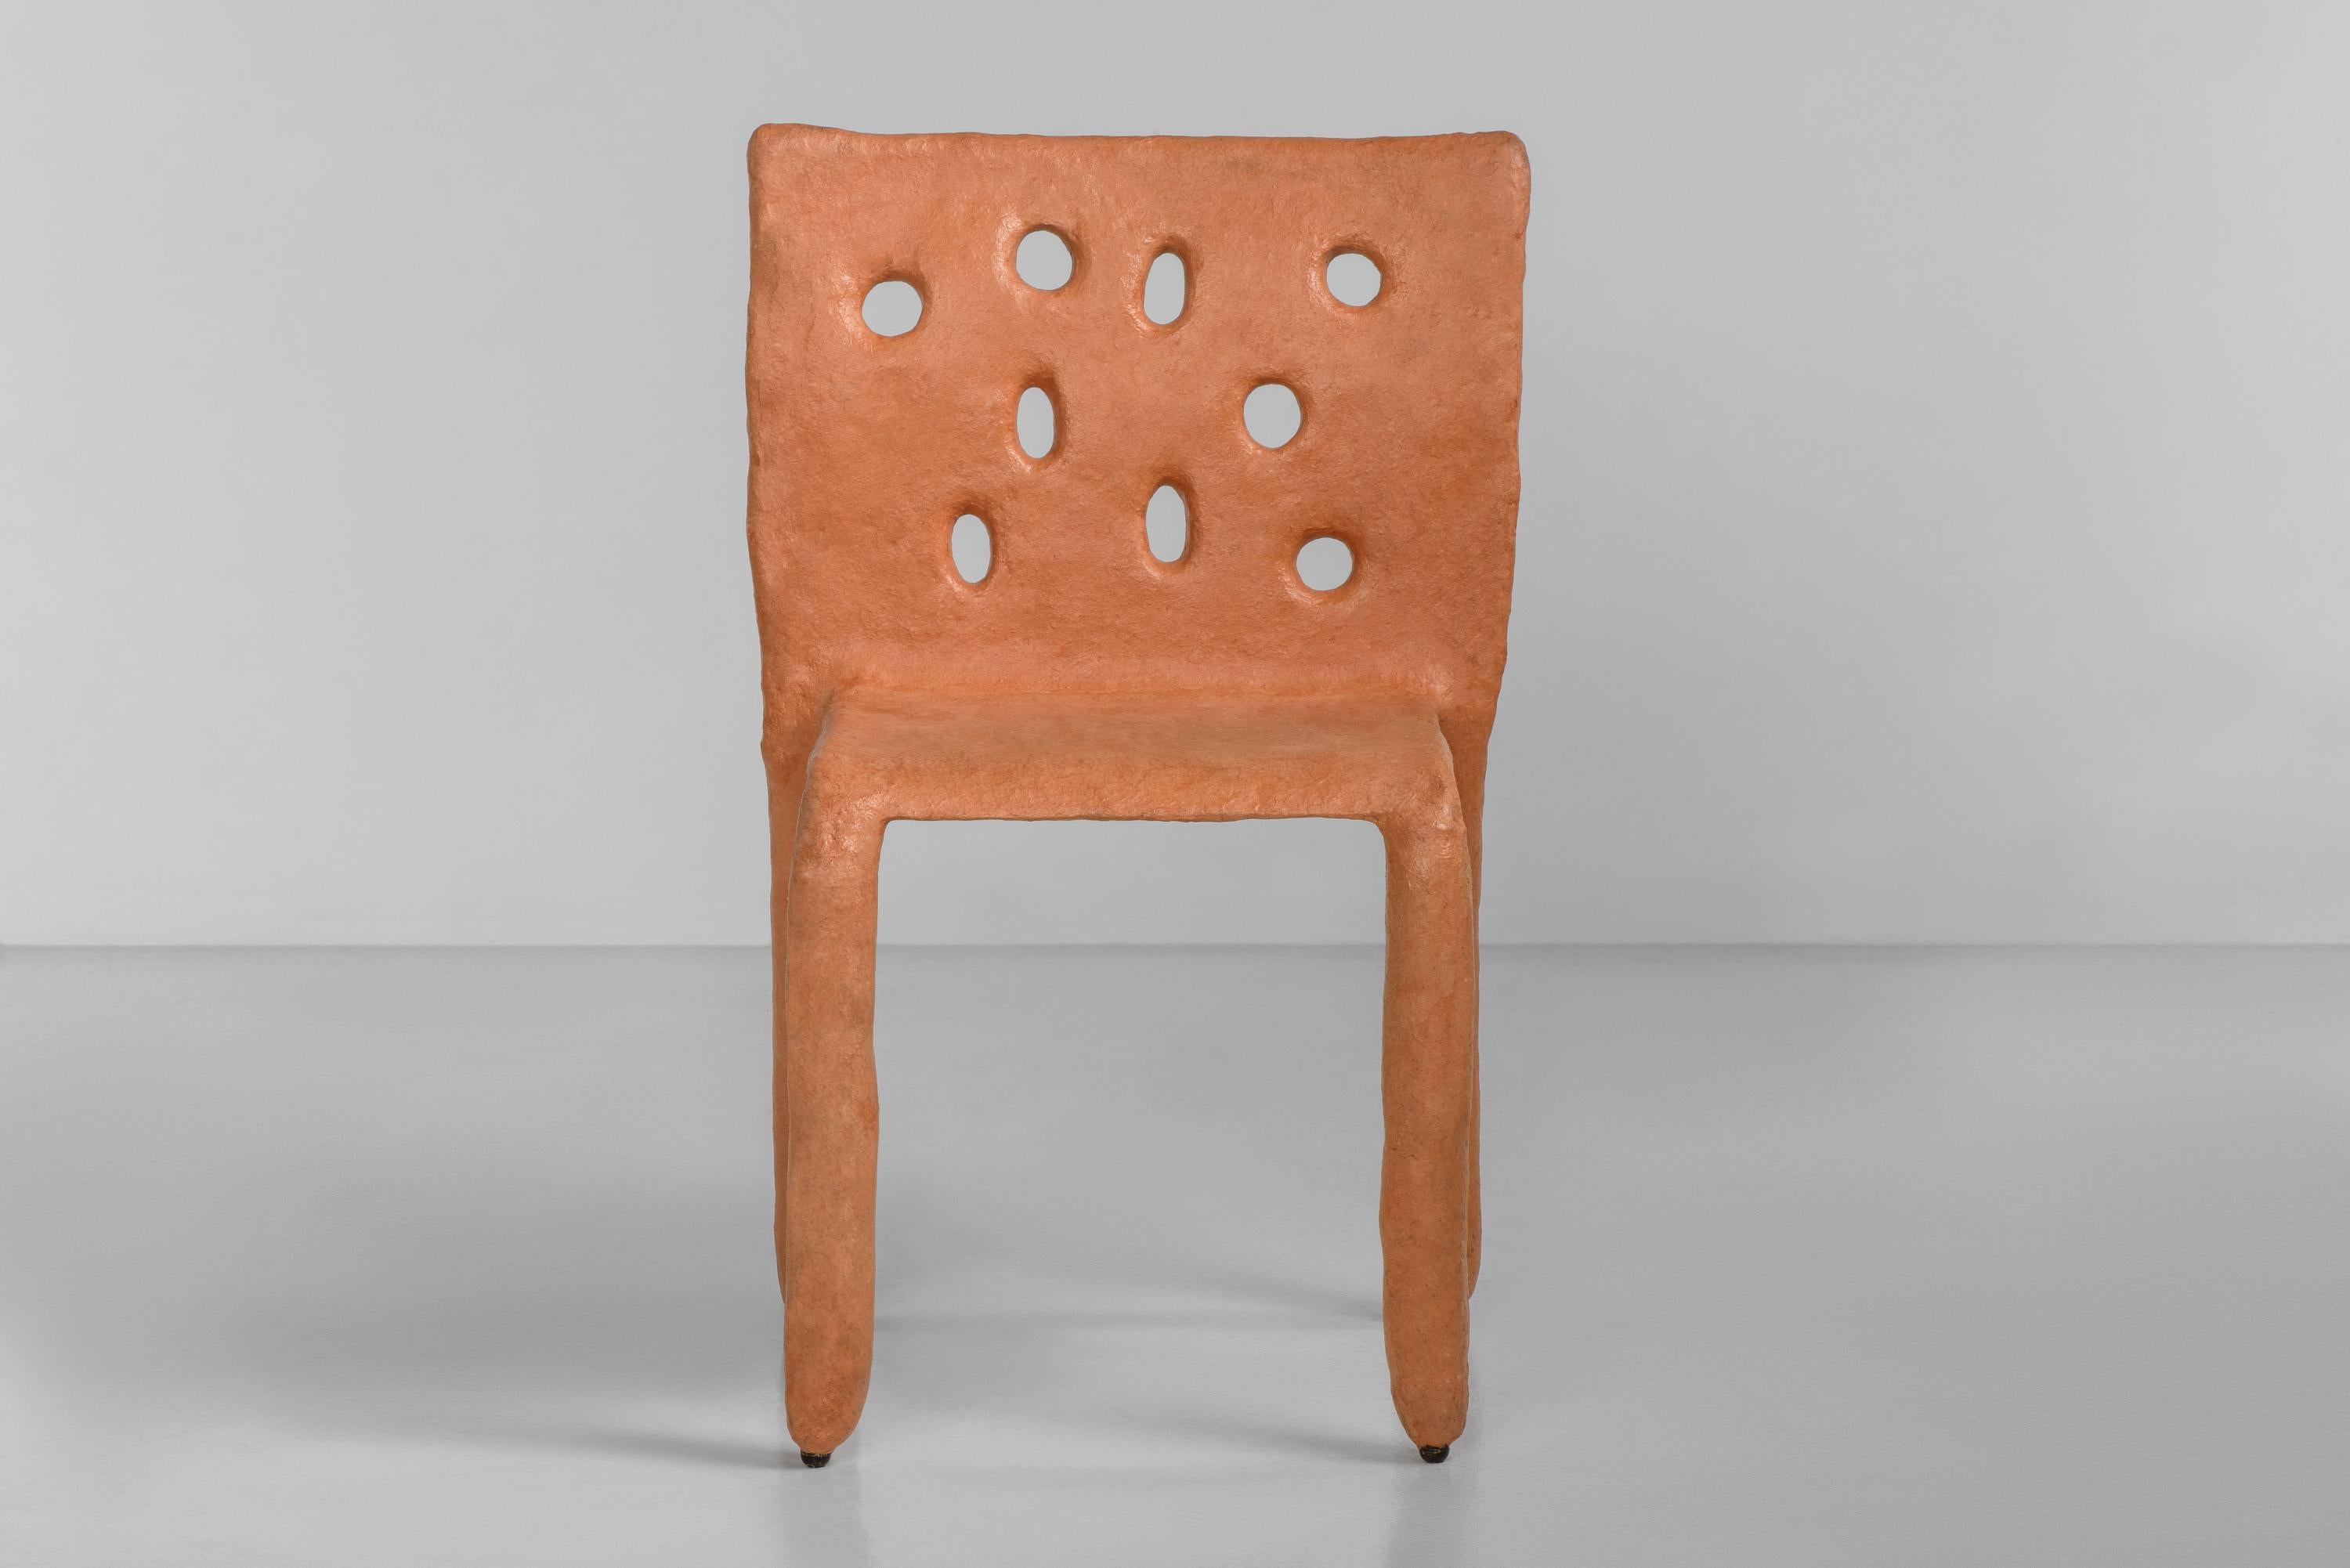 Sculpté en extérieur Contemporary  chaise de FAINA
Design : Victoriya Yakusha
MATERIAL : acier, caoutchouc de lin, biopolymère, cellulose.
Dimensions : Hauteur 82 x largeur 54 x profondeur des pieds 45 cm
 Poids : 15 kilos.

Finition intérieure